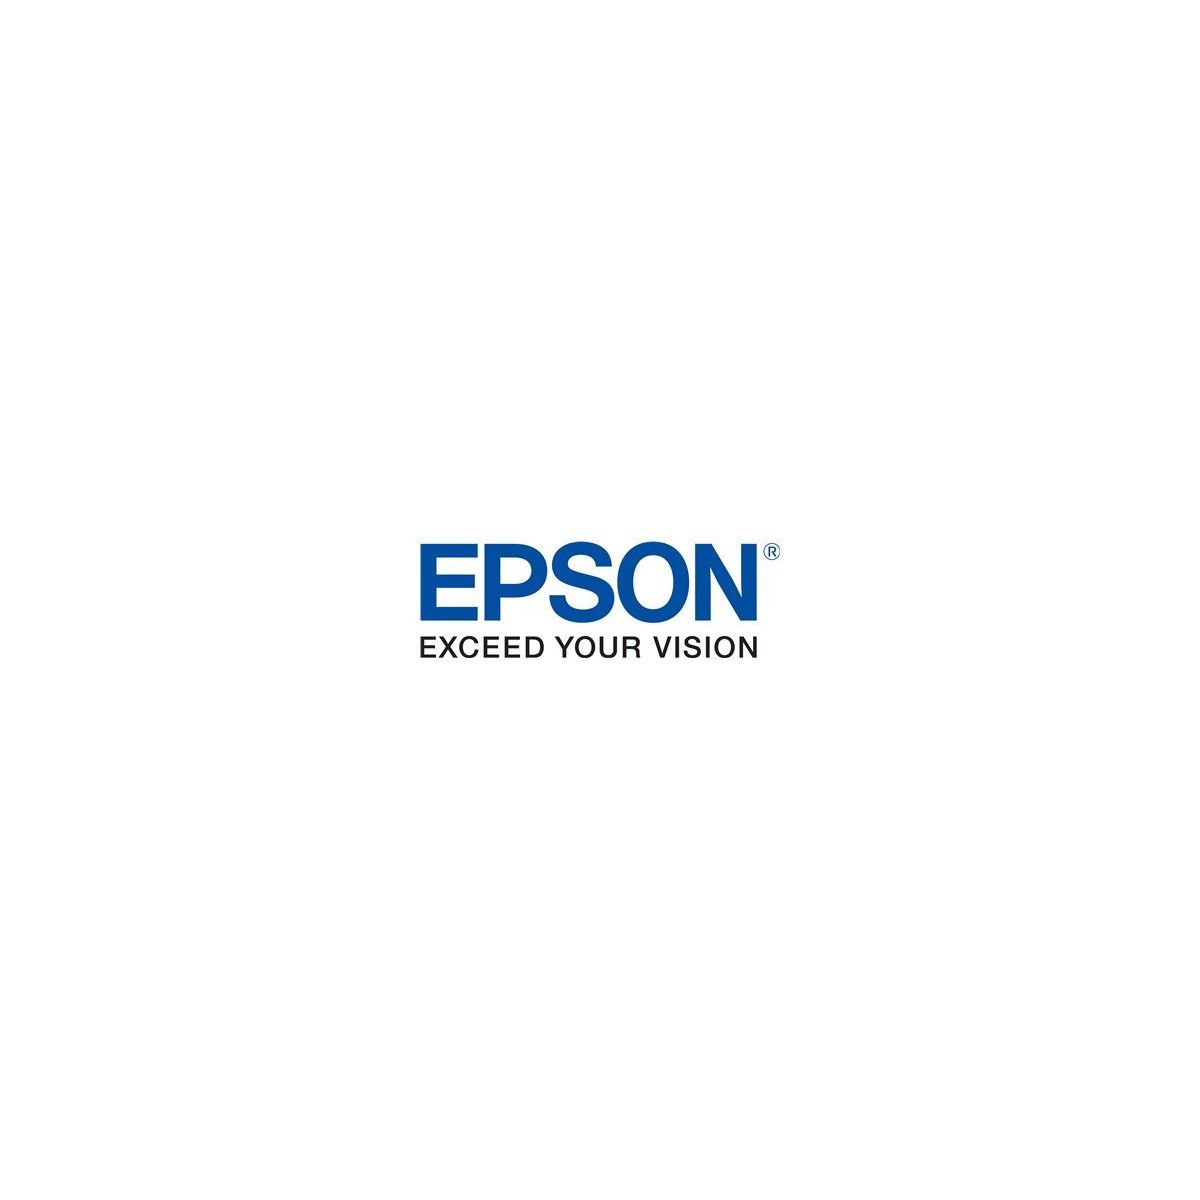 Epson EPL-5700/5700L PAPIERZUFUHR 550 BLATT - 500 sheet